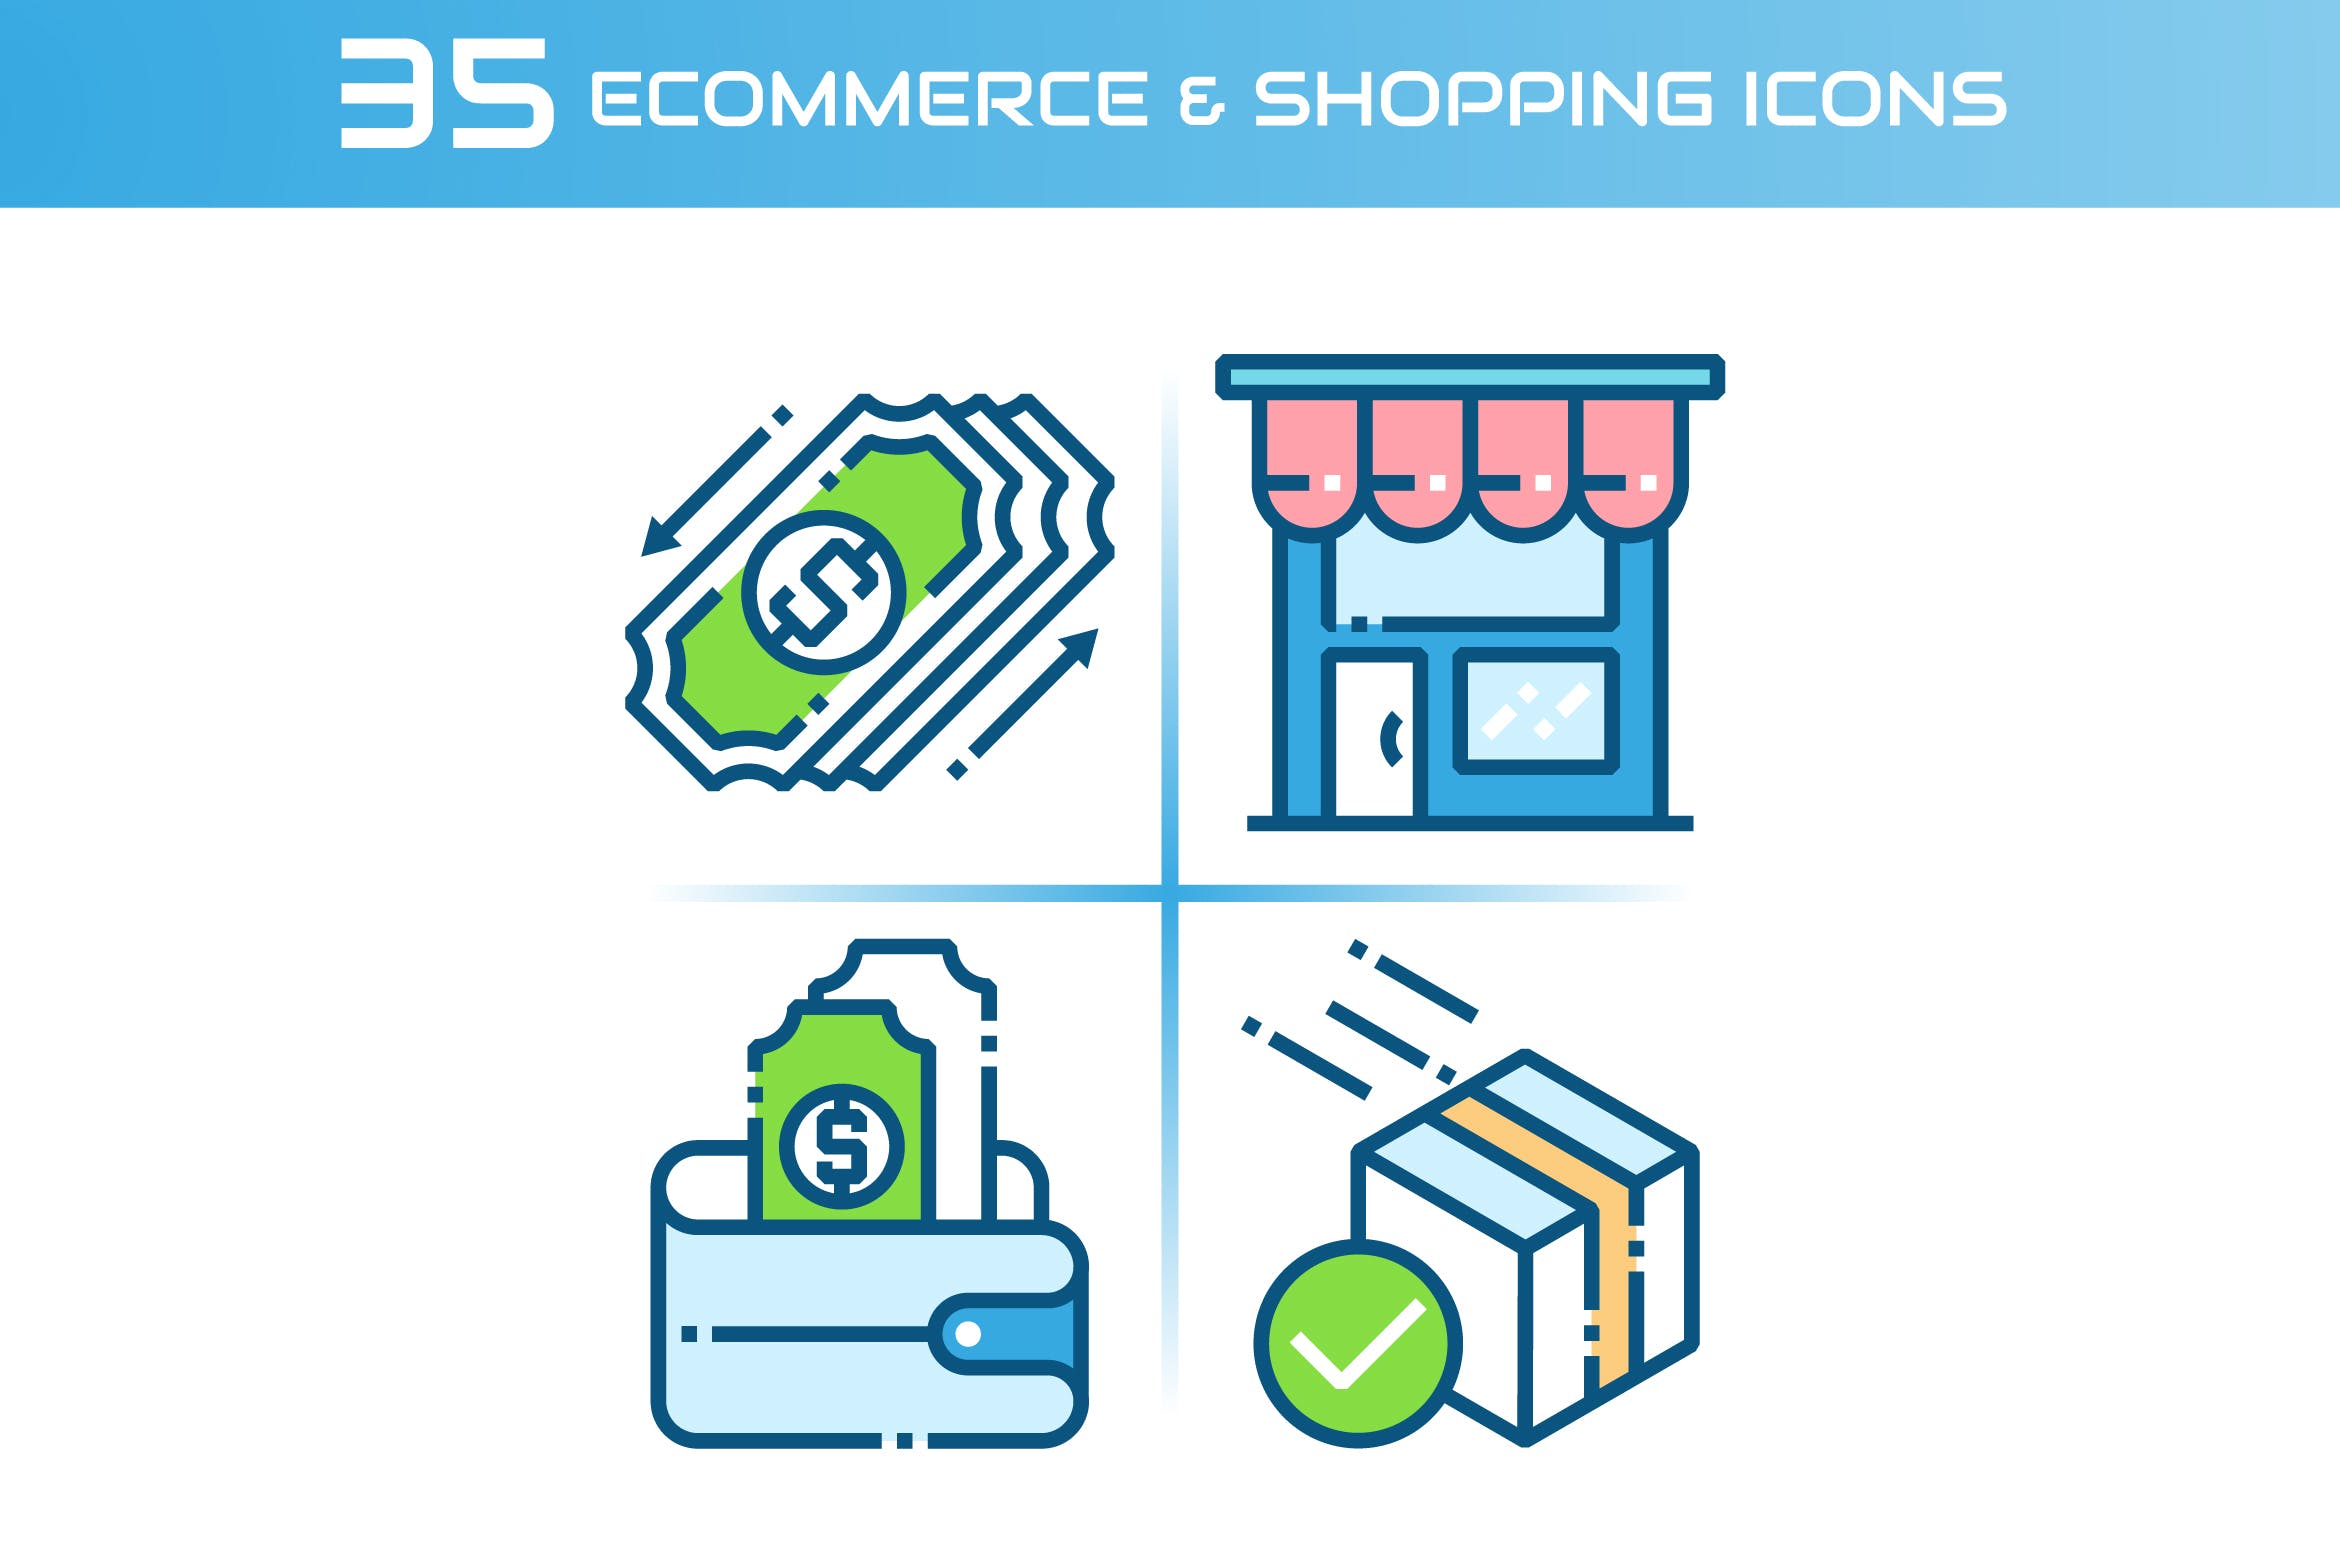 35枚电子商务&购物主题矢量素材库精选图标 E-commerce and Shopping Icons插图